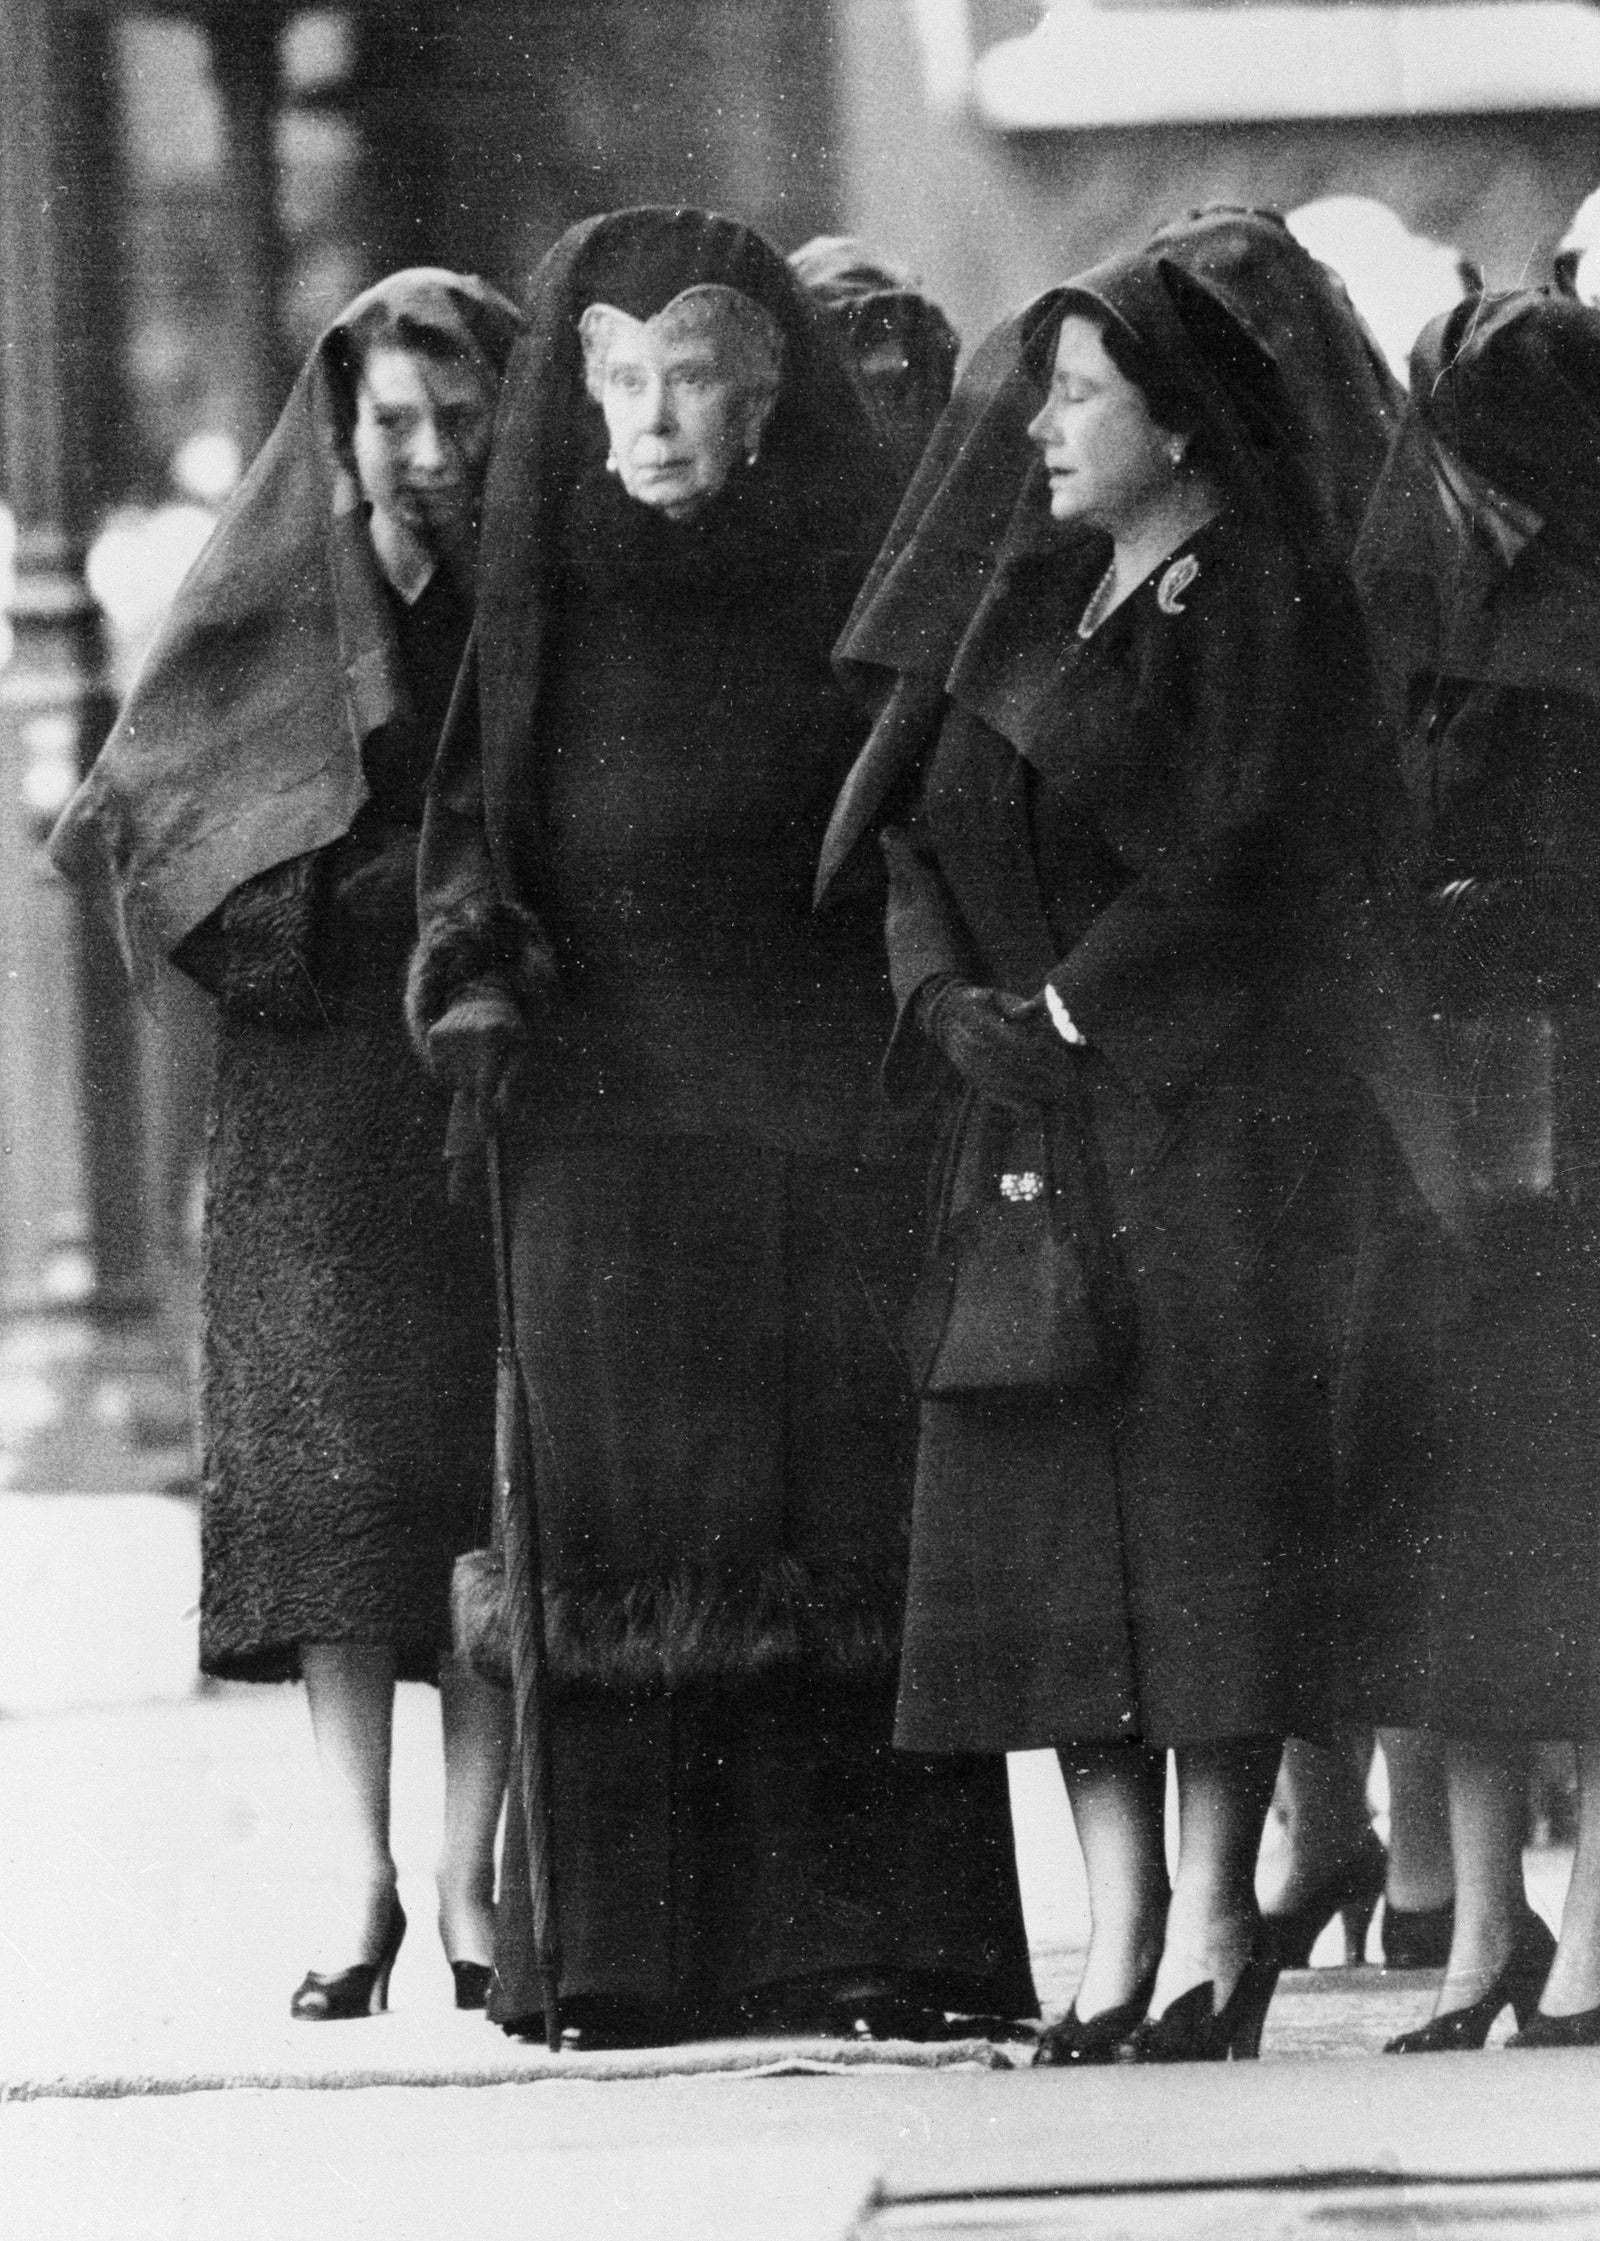 Królowa Elżbieta II, królowa Maria i królowa Elżbieta (królowa matka, wdowa po królu Jerzym VI) – wszystkie w czarnych żałobnych strojach i perłach oczekujące na przyjazd specjalnego pociągu, który w lutym 1952 r. przywiózł trumnę Jerzego VI z Sandringham przed jego pogrzebem. (Fot. Getty Images)